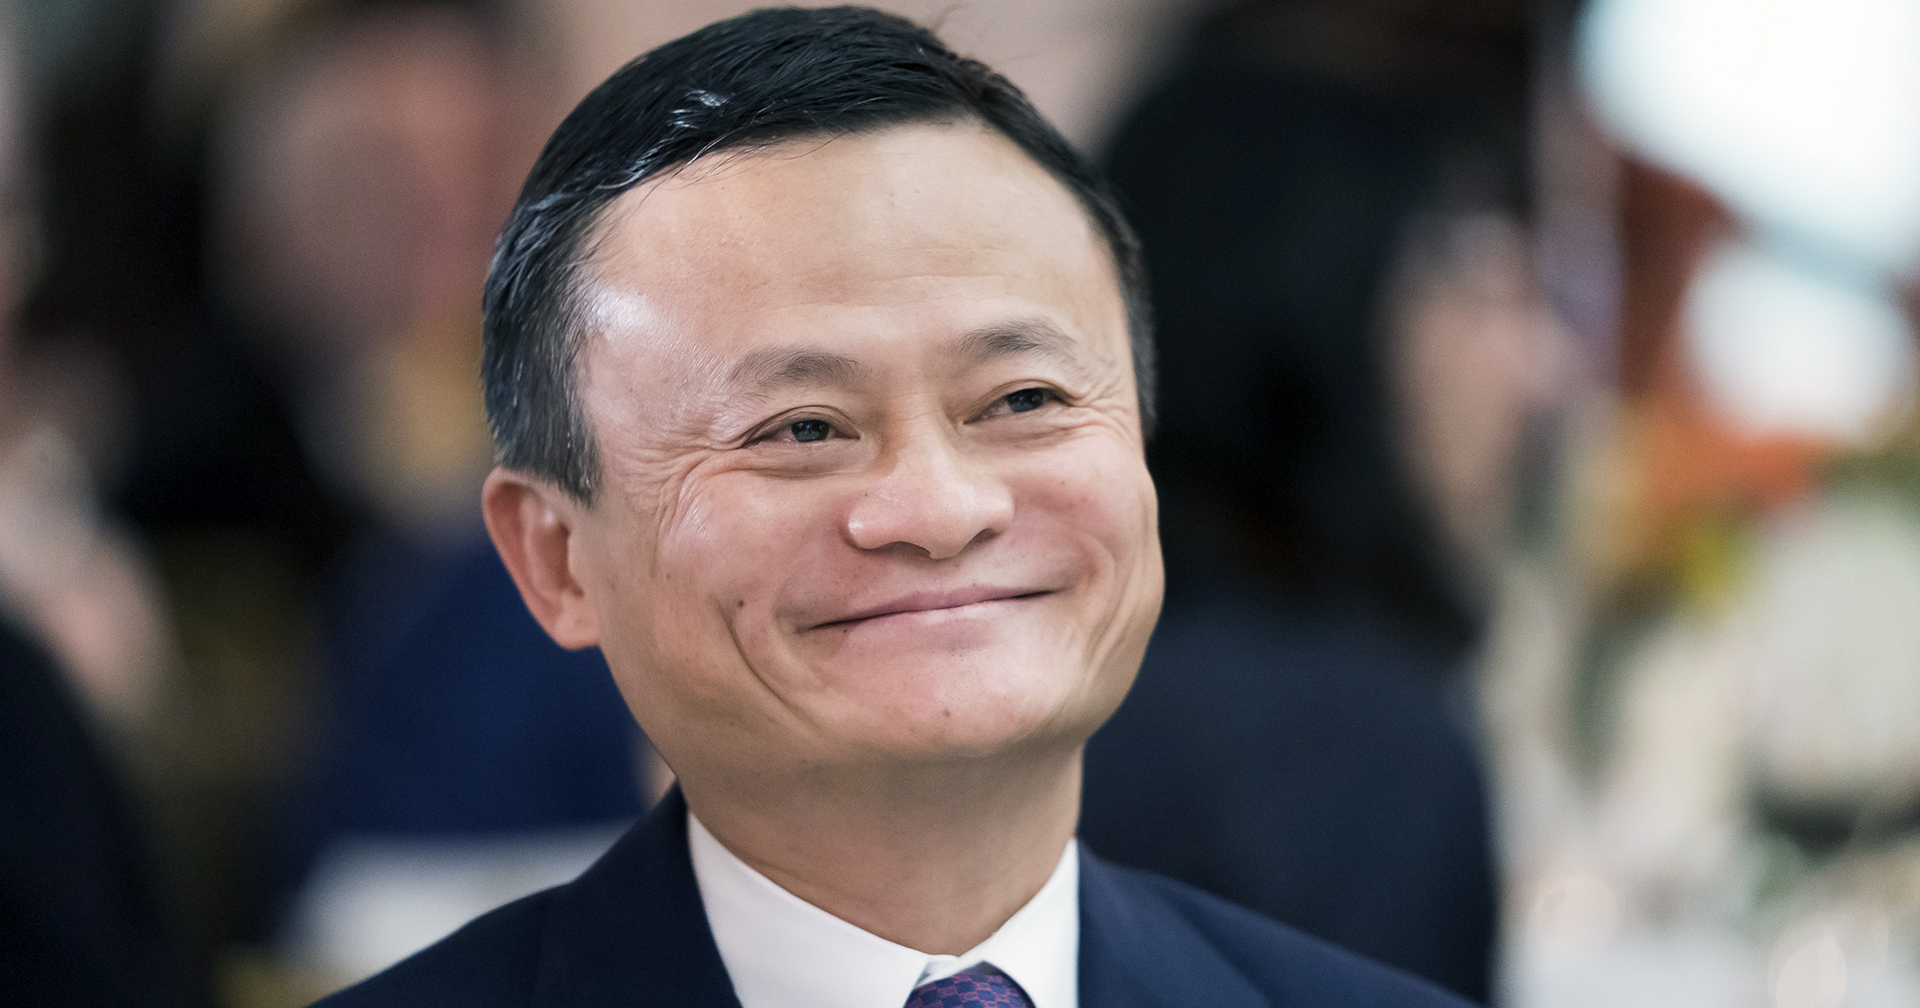 Jack Ma ผู้ก่อตั้ง Alibaba ยังไม่ได้กลับจีน : อาศัยอยู่ที่โตเกียวมาครึ่งปีแล้ว